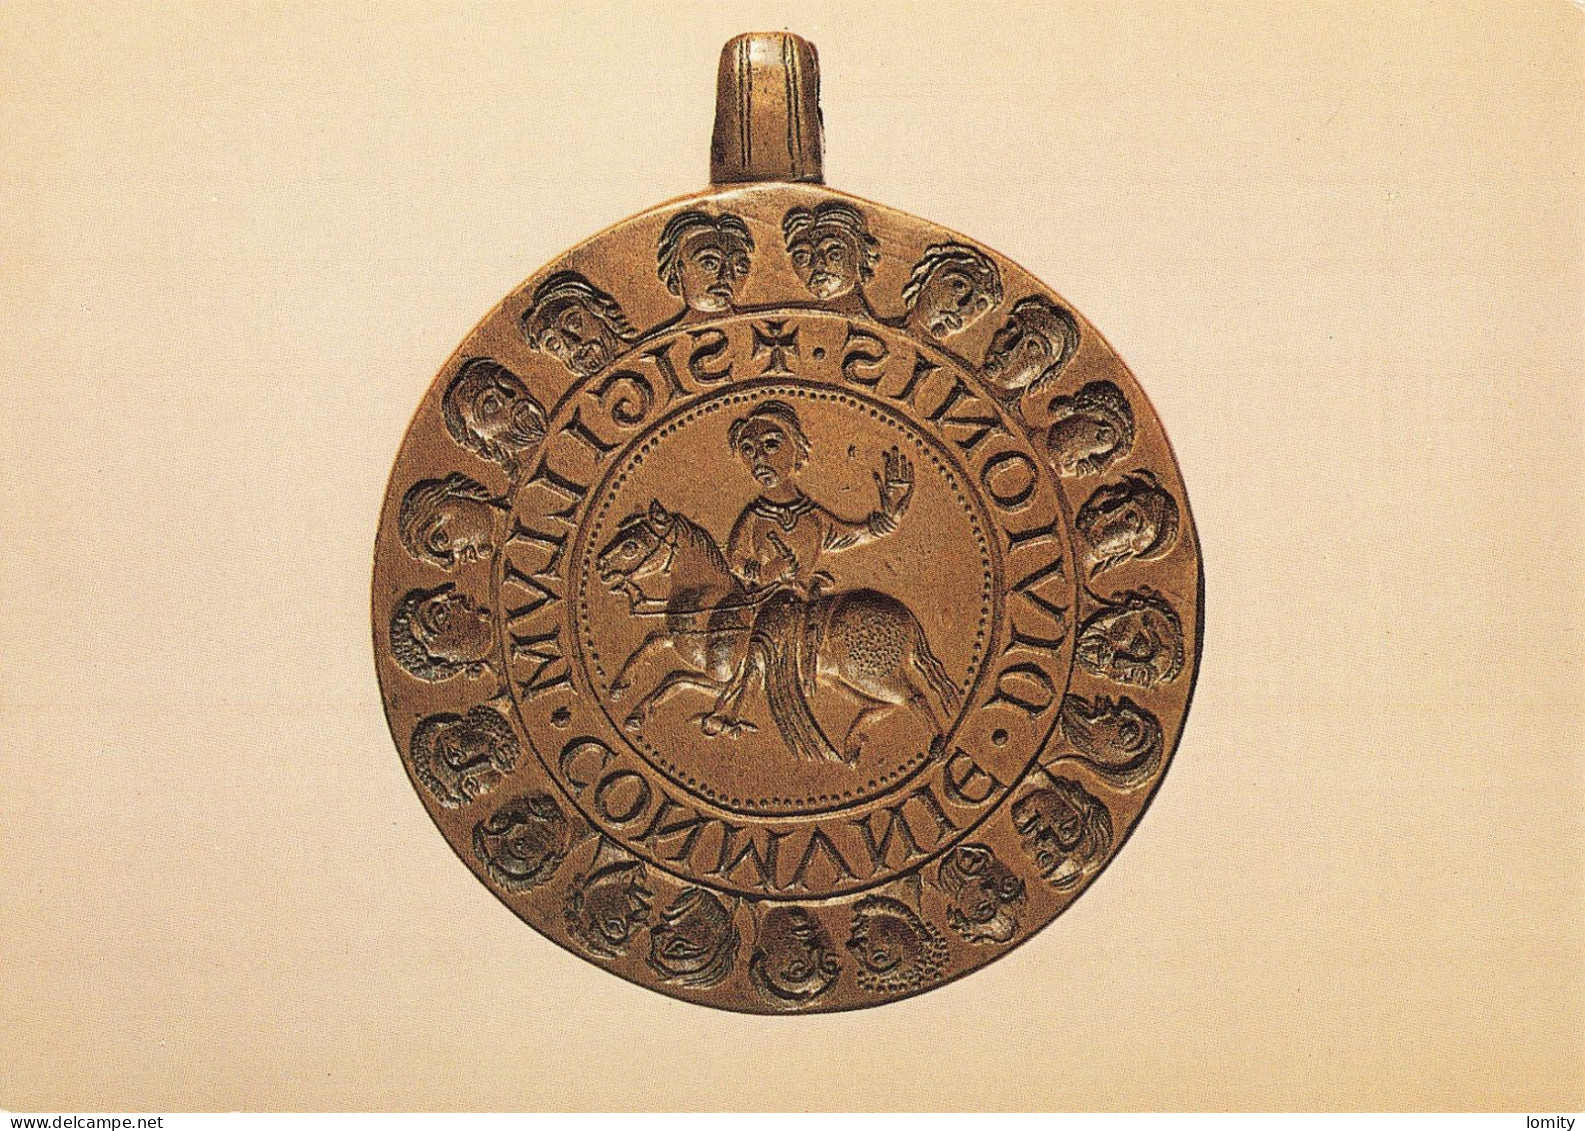 CPM Matrice Du Grand Sceau De La Commune De Dijon Vers 1200 , Bronze, 78 Mm. Bibliothèque Nationale - Monnaies (représentations)